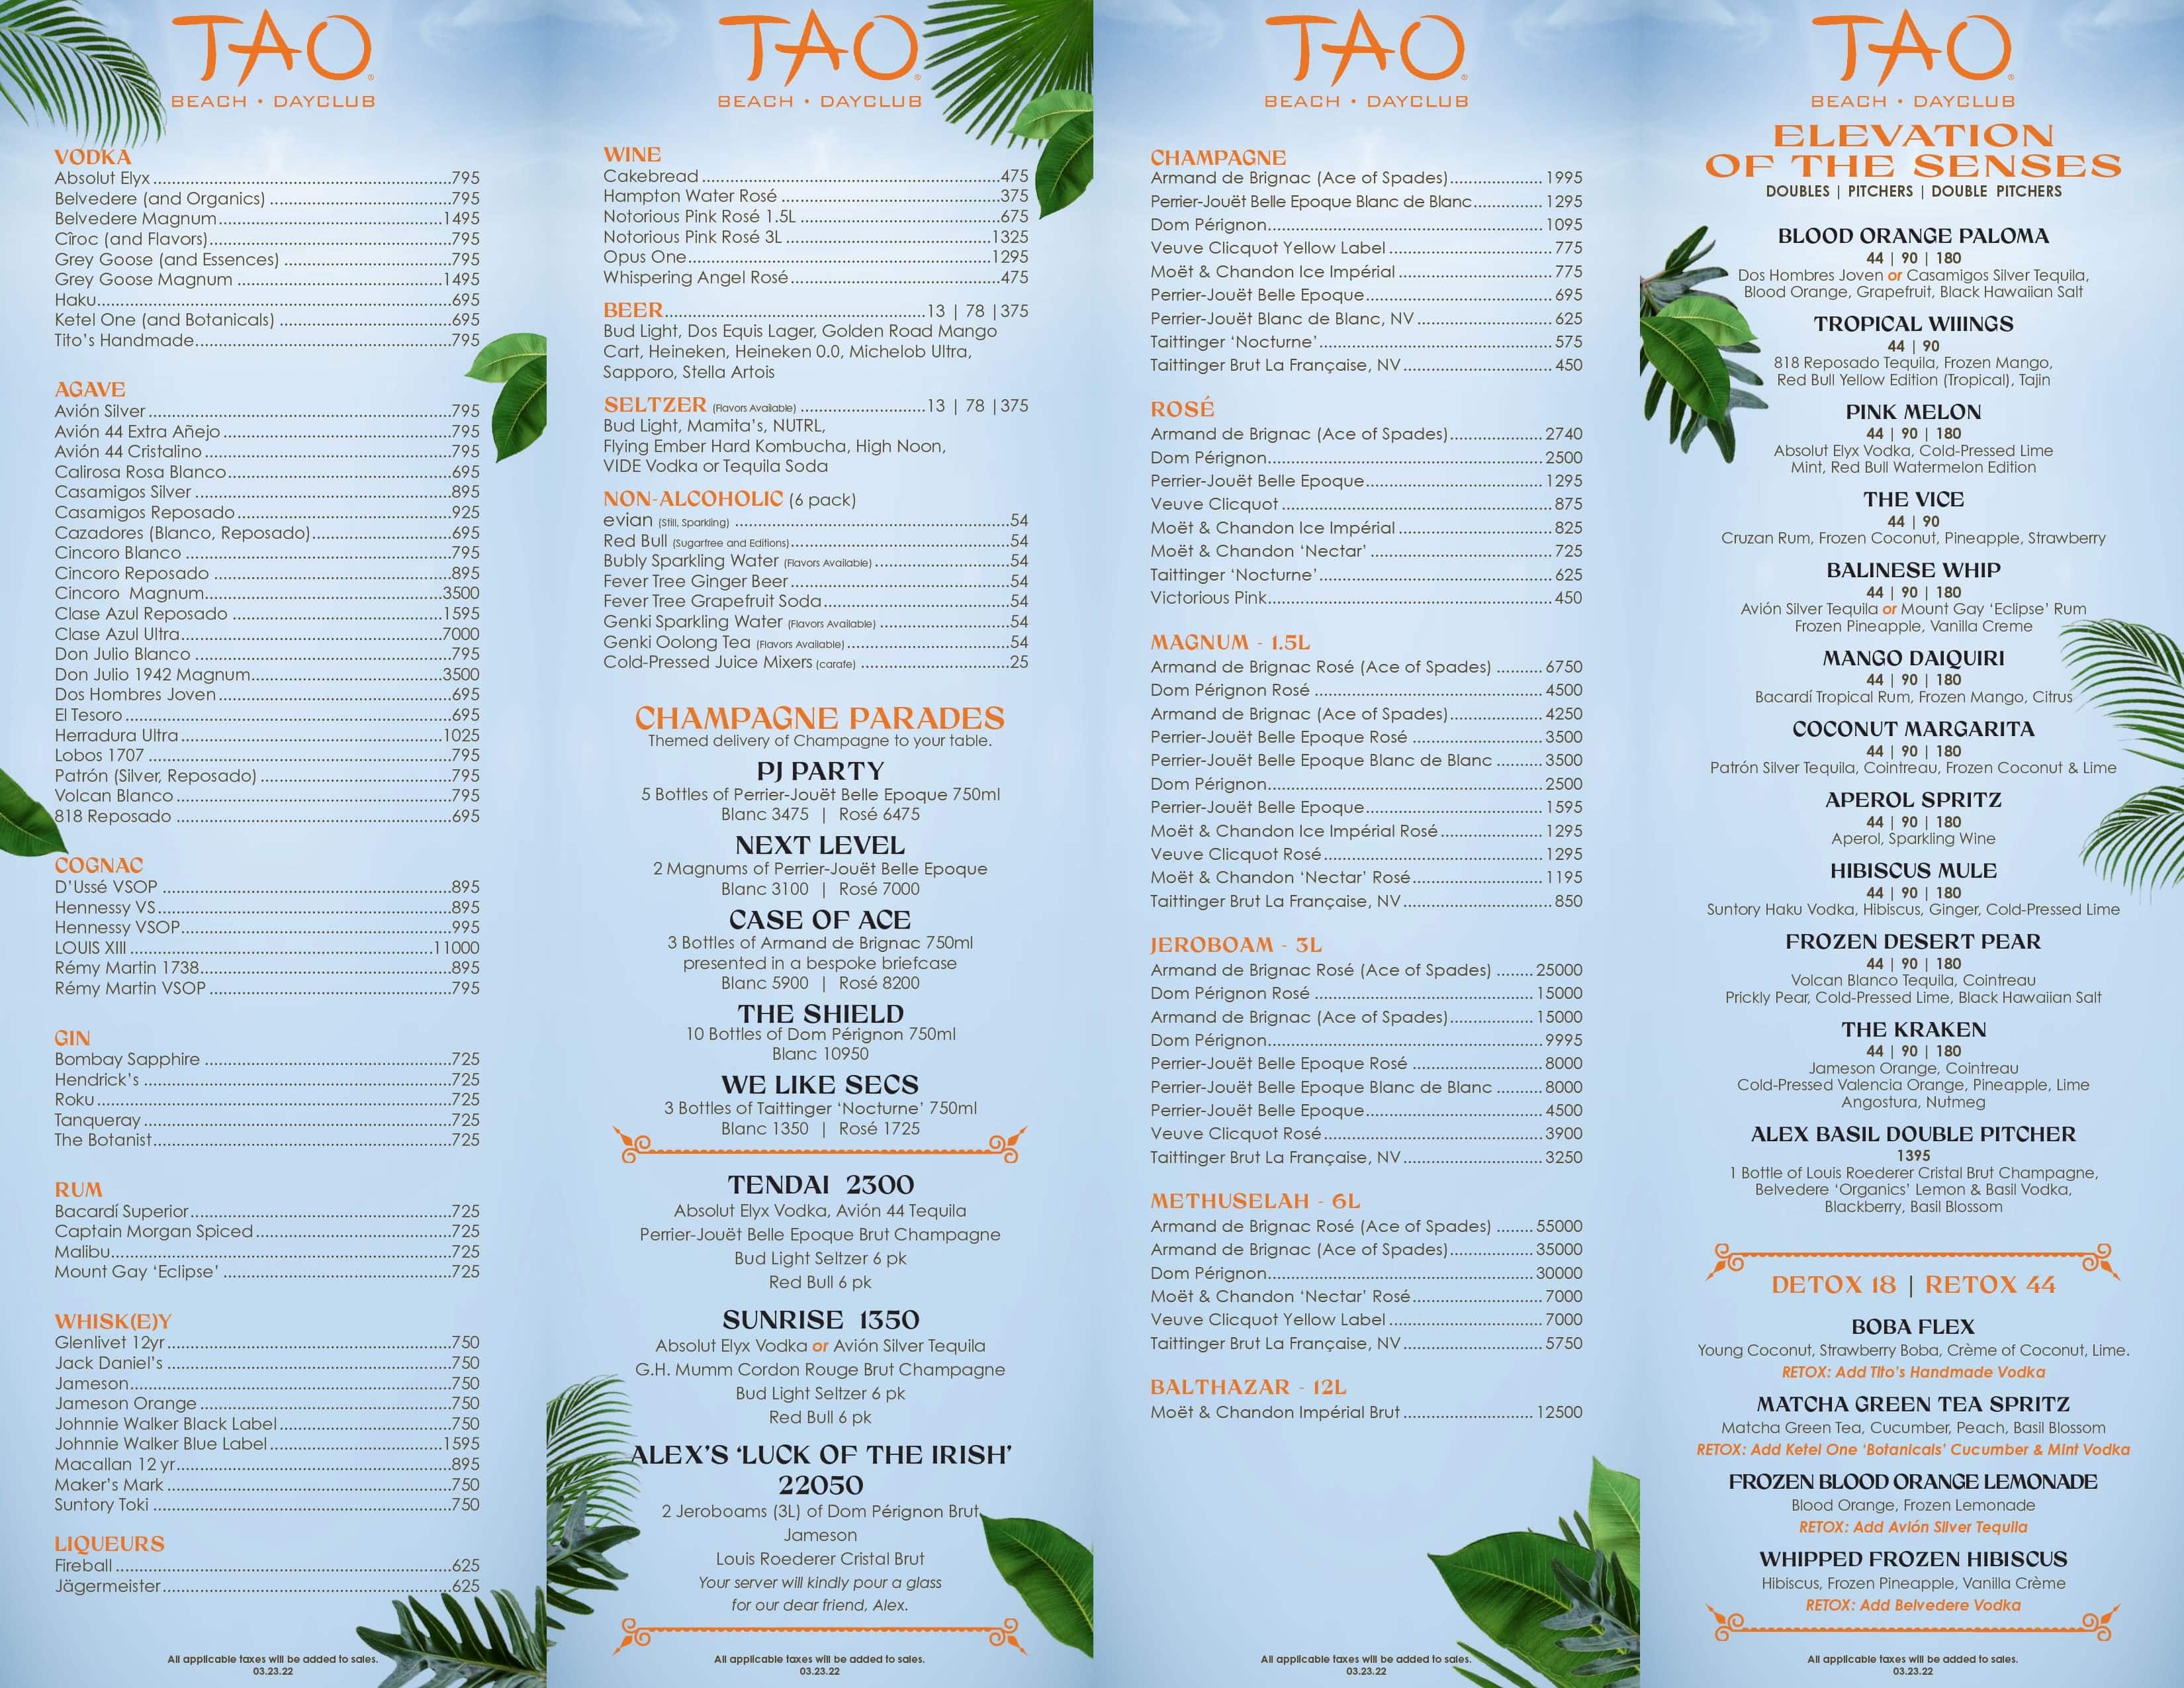 Tao Beach Club menu